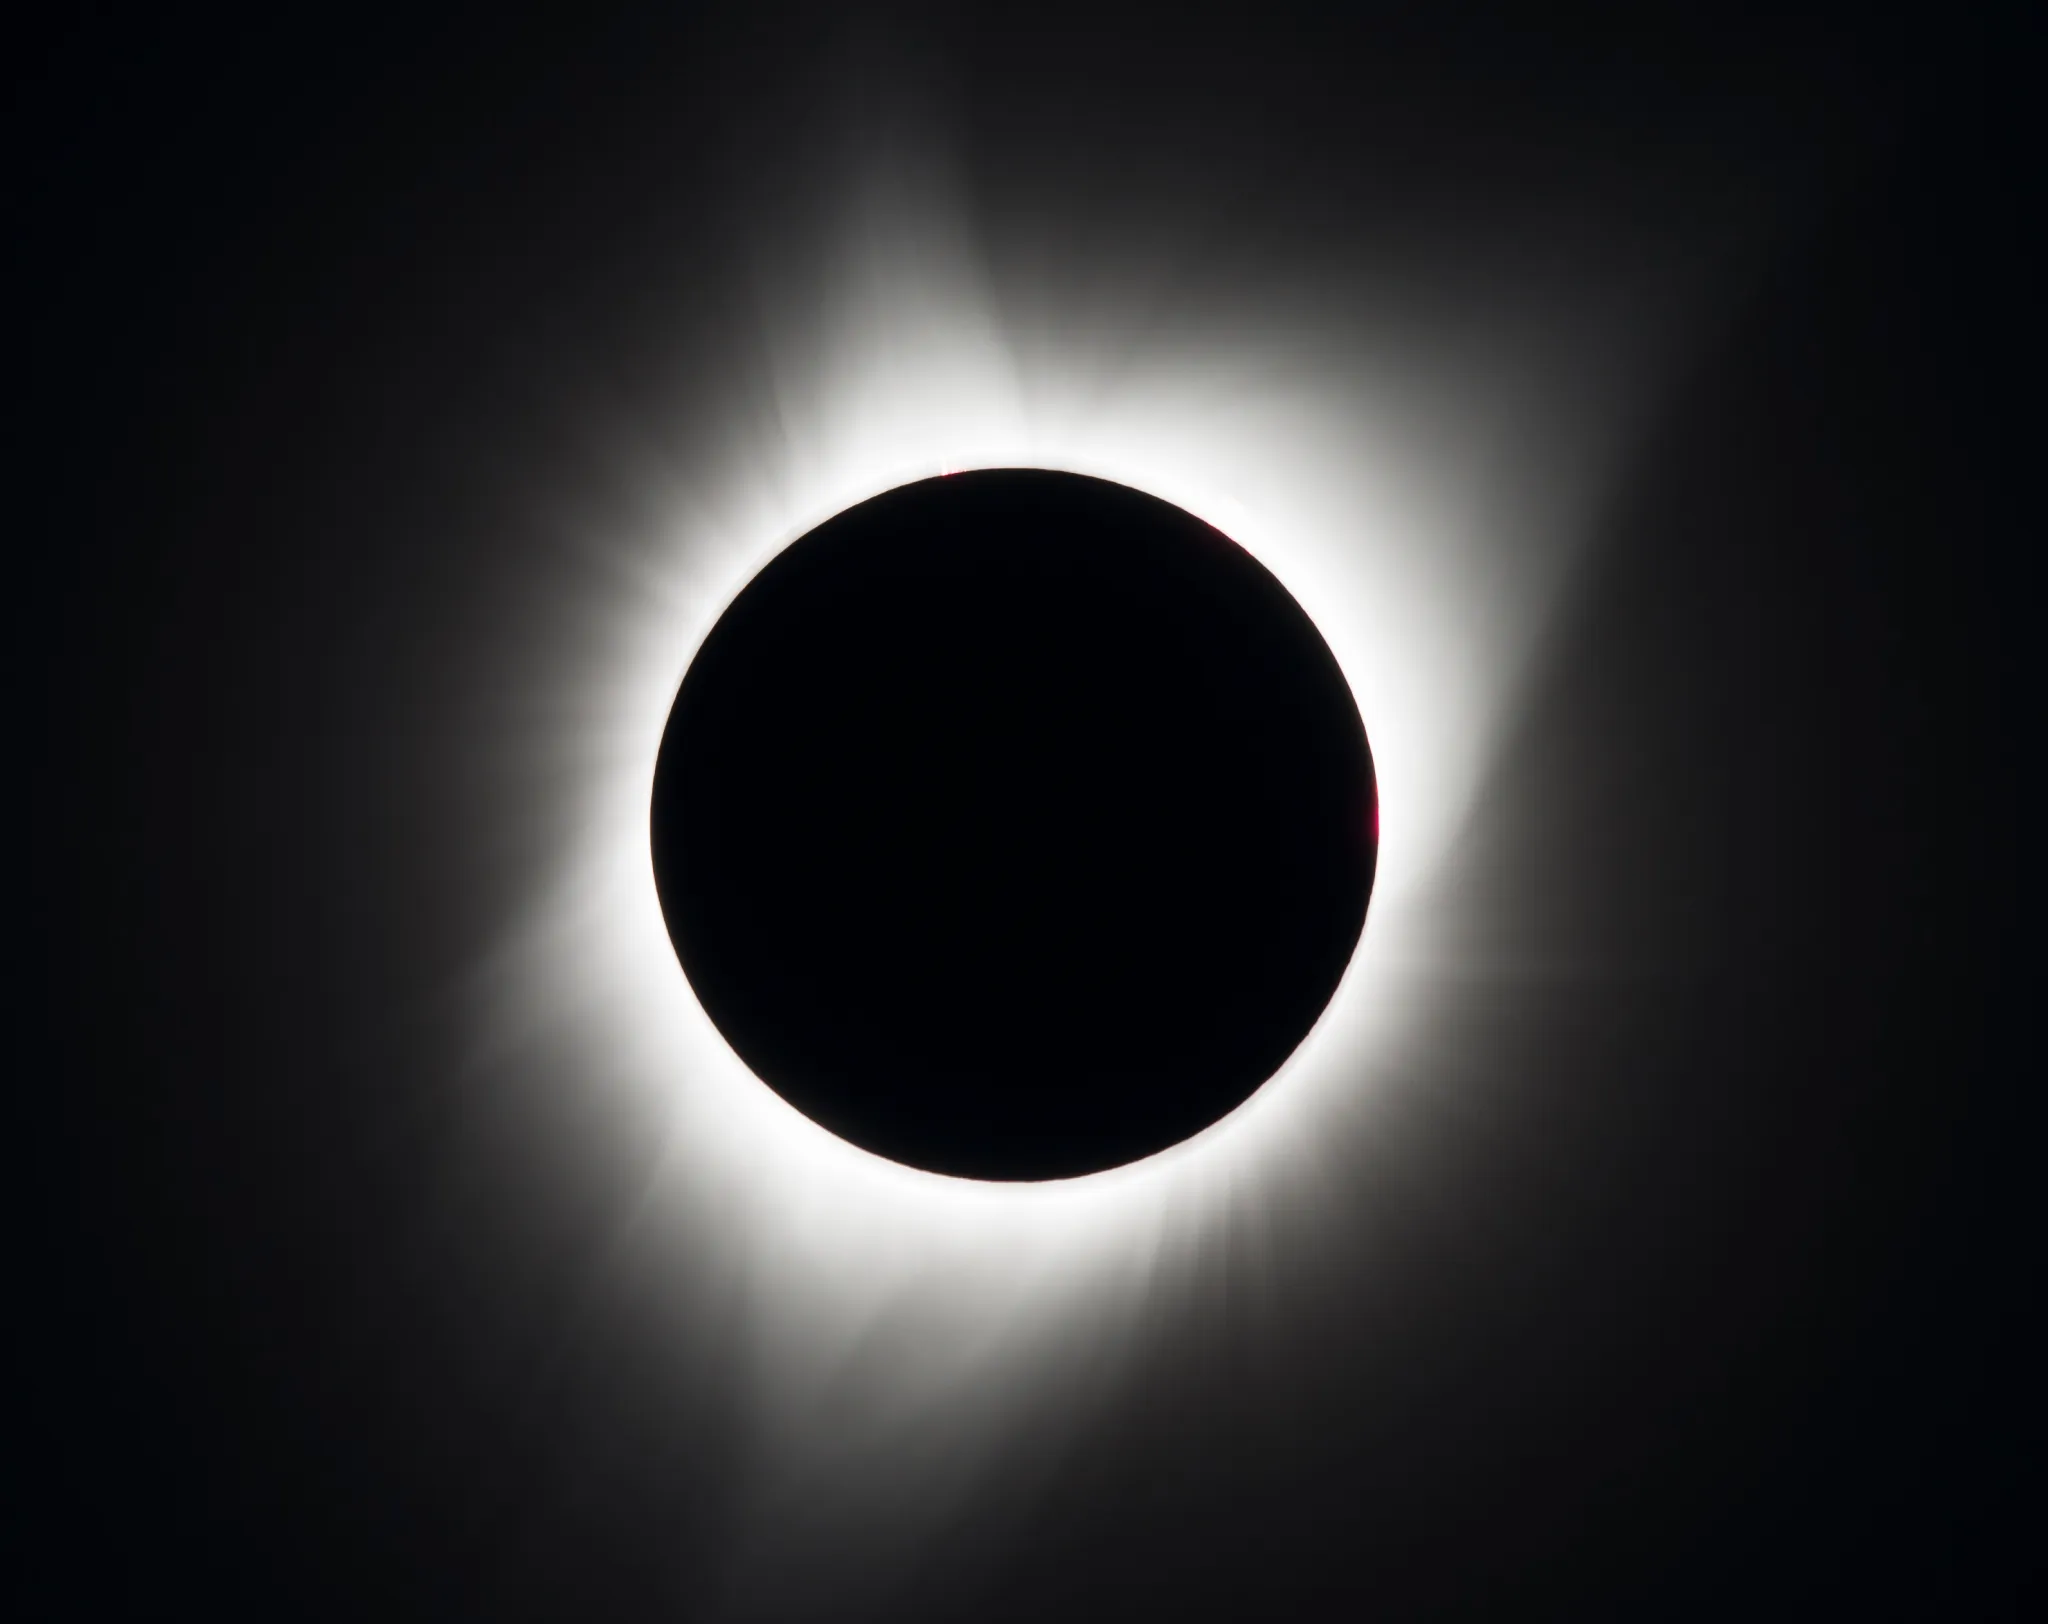 Cette image d'une éclipse solaire, où le disque lunaire occulte totalement le disque solaire, est authentique. Elle est partagée par la Nasa, indiquant qu'il s'agit d'une vue de l'éclipse du 21 août 2017. © Aubrey Gemignani, Nasa